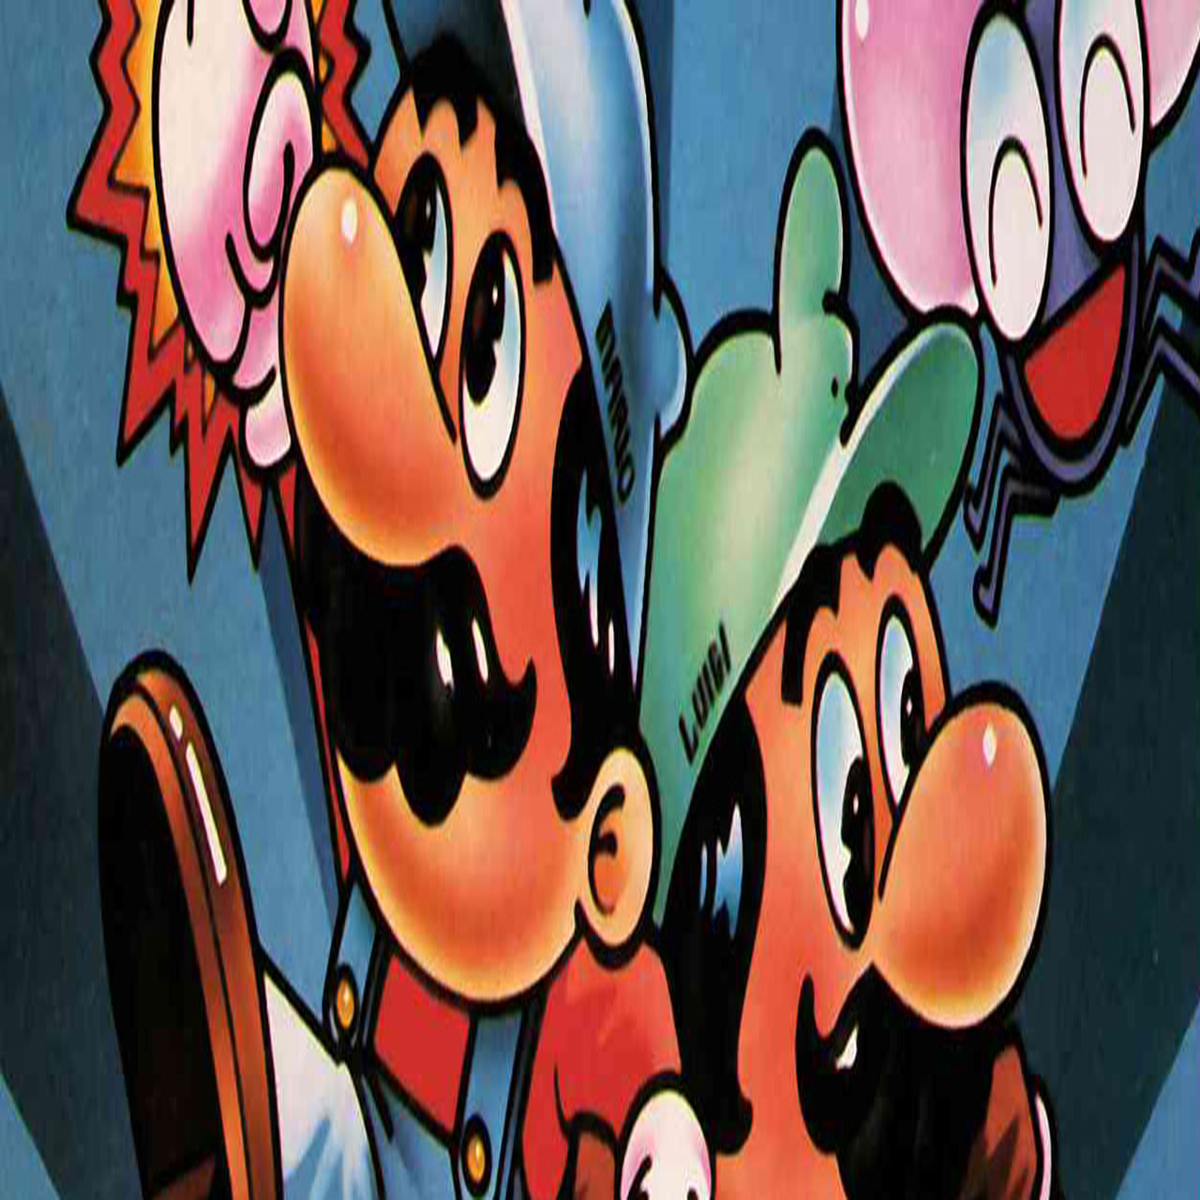 Super Mario Bros: A timeless classic for autistic children - EmoGami